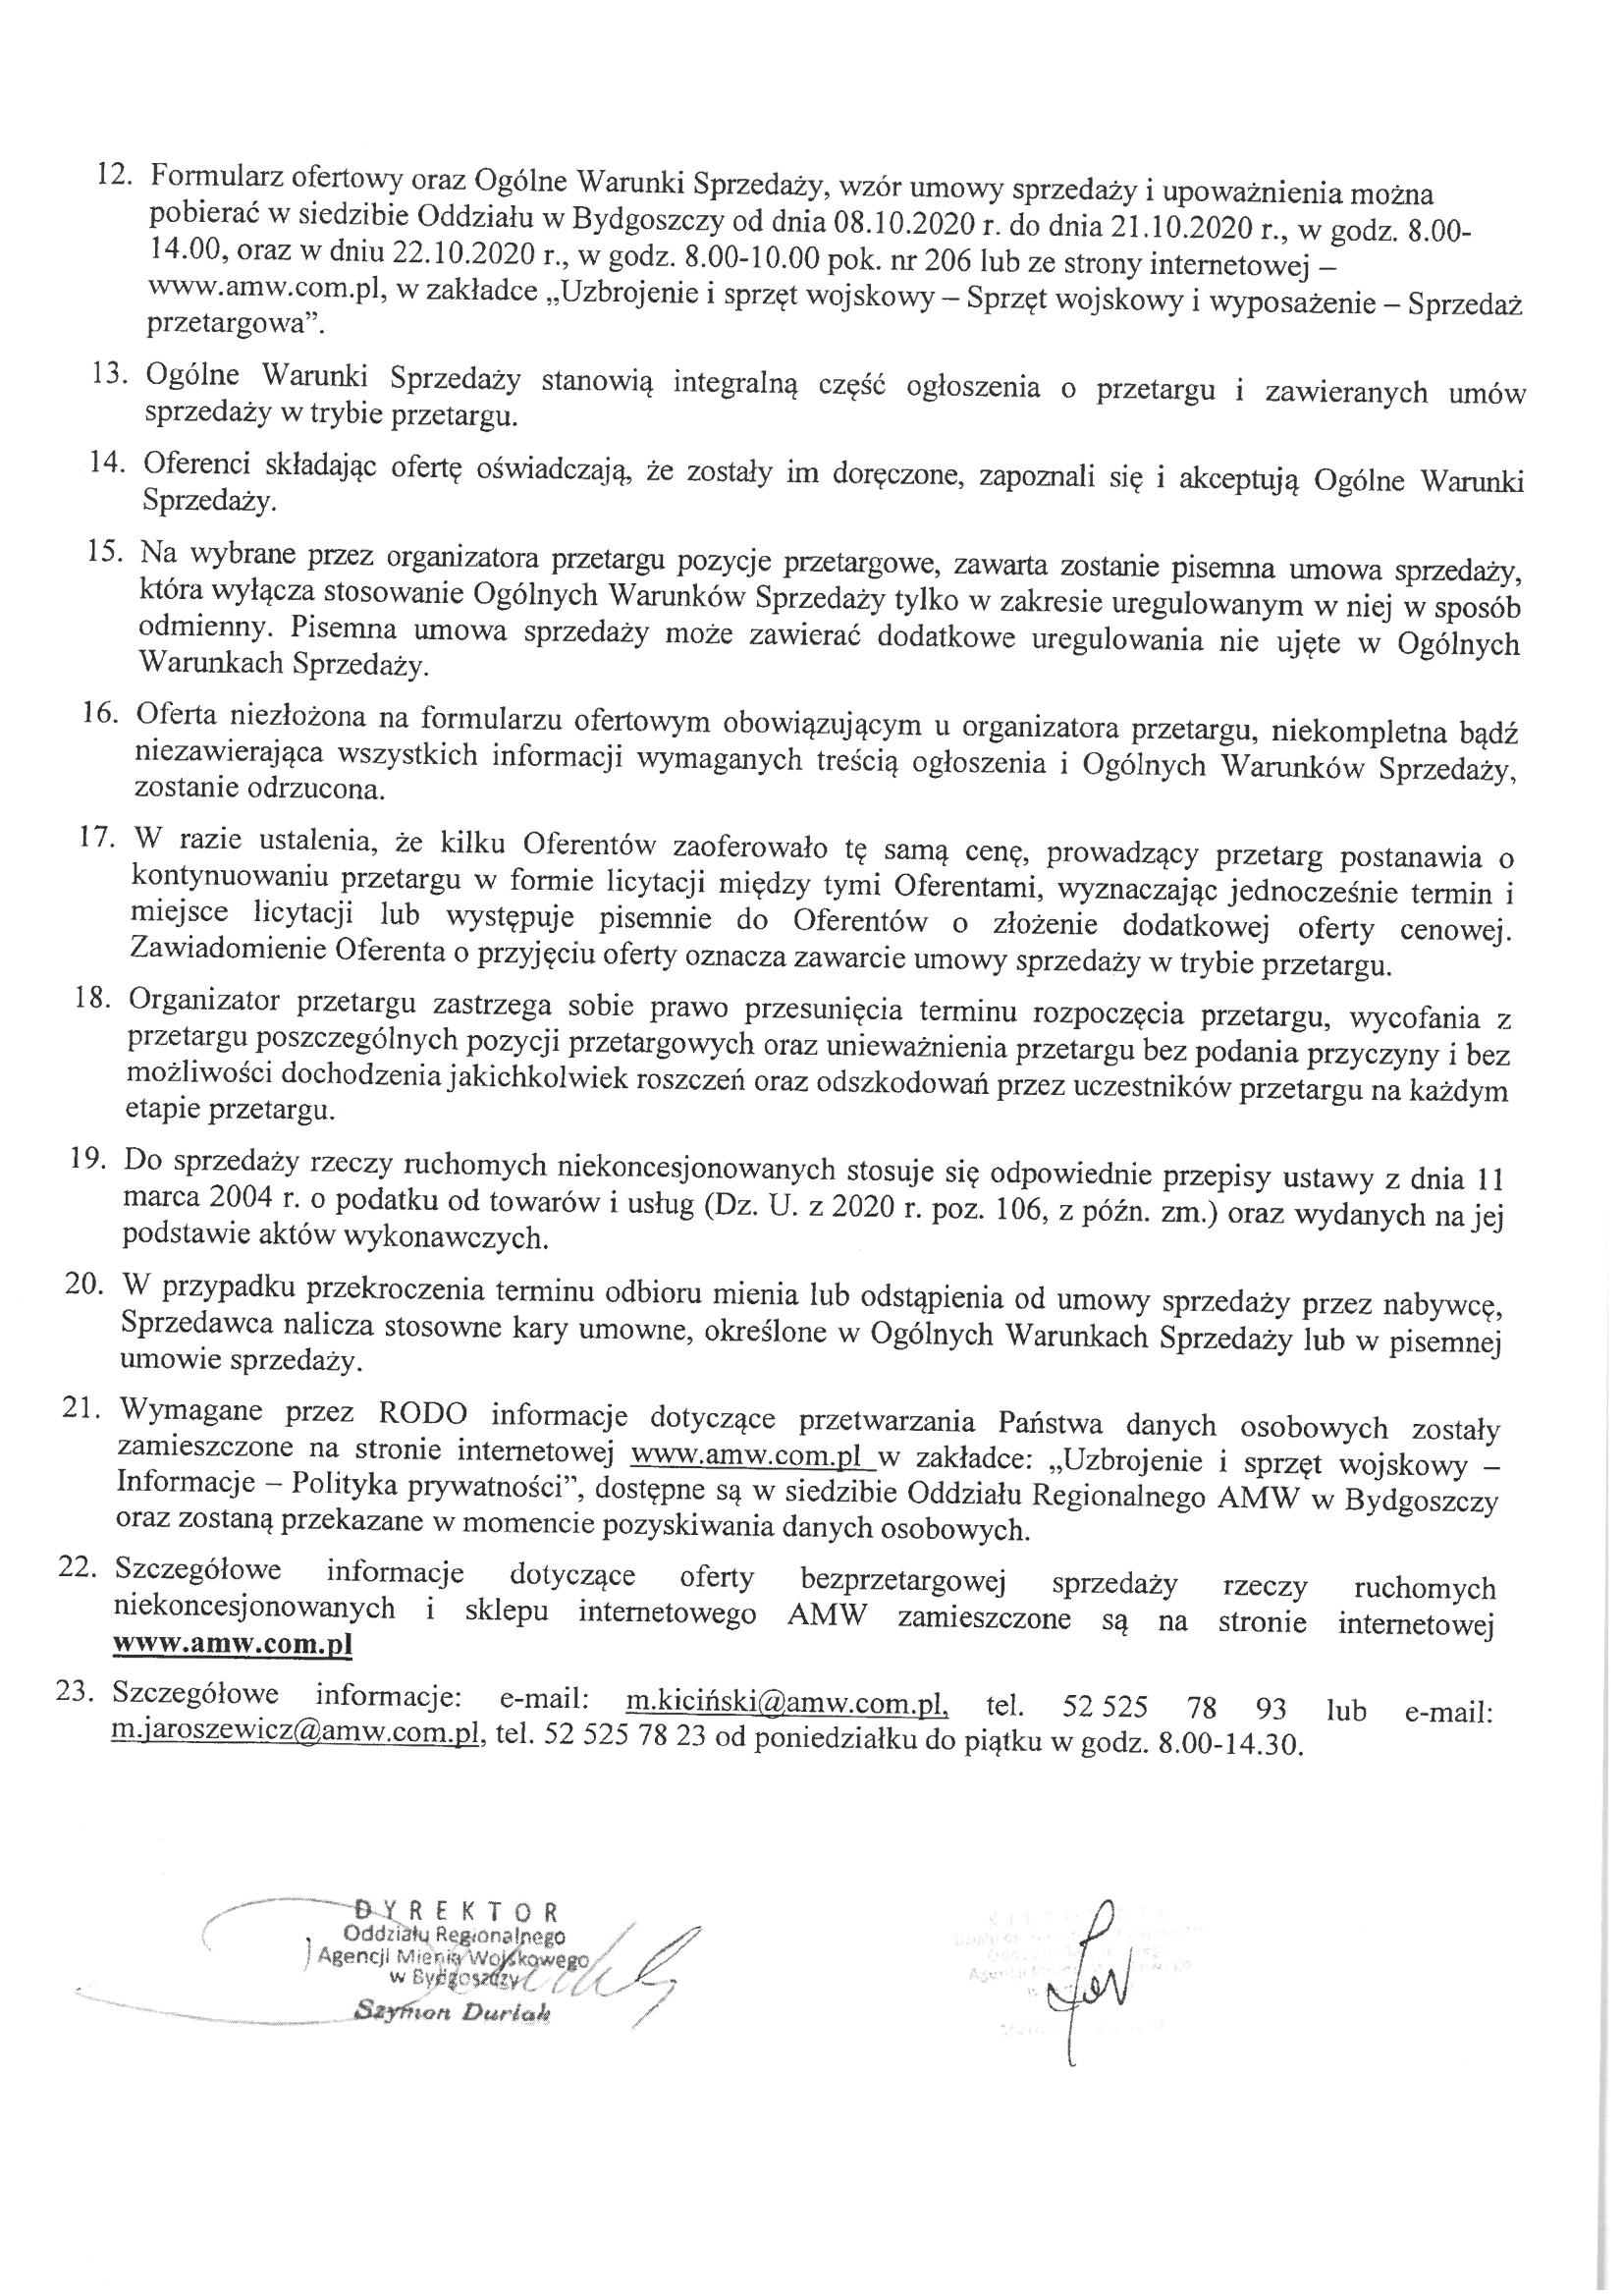 Agencja Mienia Wojskowego ogłasza przetarg publiczny pisemny na sprzedaż rzeczy ruchomych niekoncesjonowanych-treść przetargu